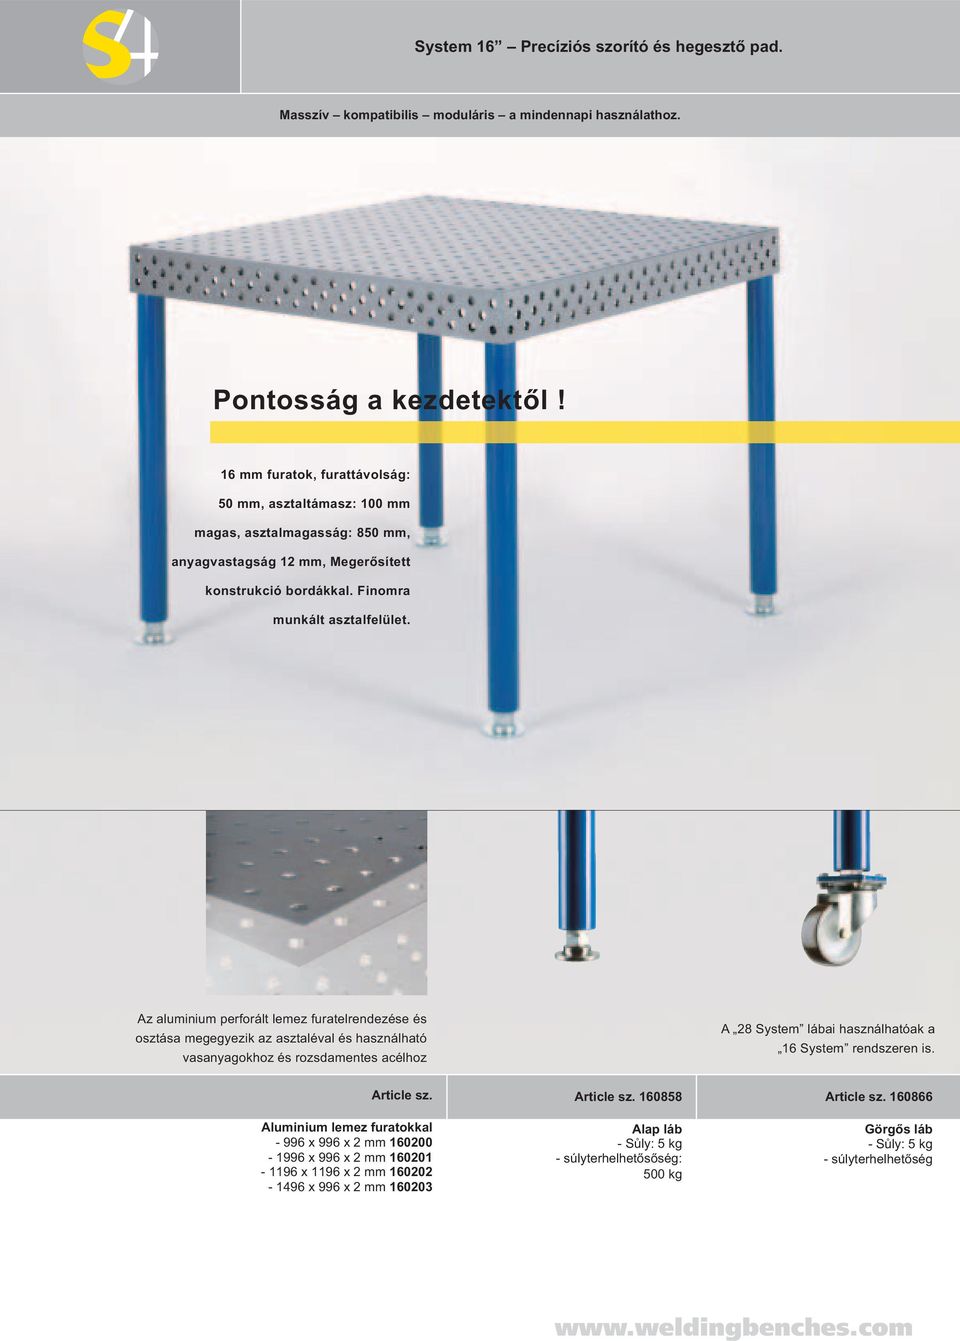 Az aluminium perforált lemez furatelrendezése és osztása megegyezik az asztaléval és használható vasanyagokhoz és rozsdamentes acélhoz A 28 System lábai használhatóak a 16 System rendszeren